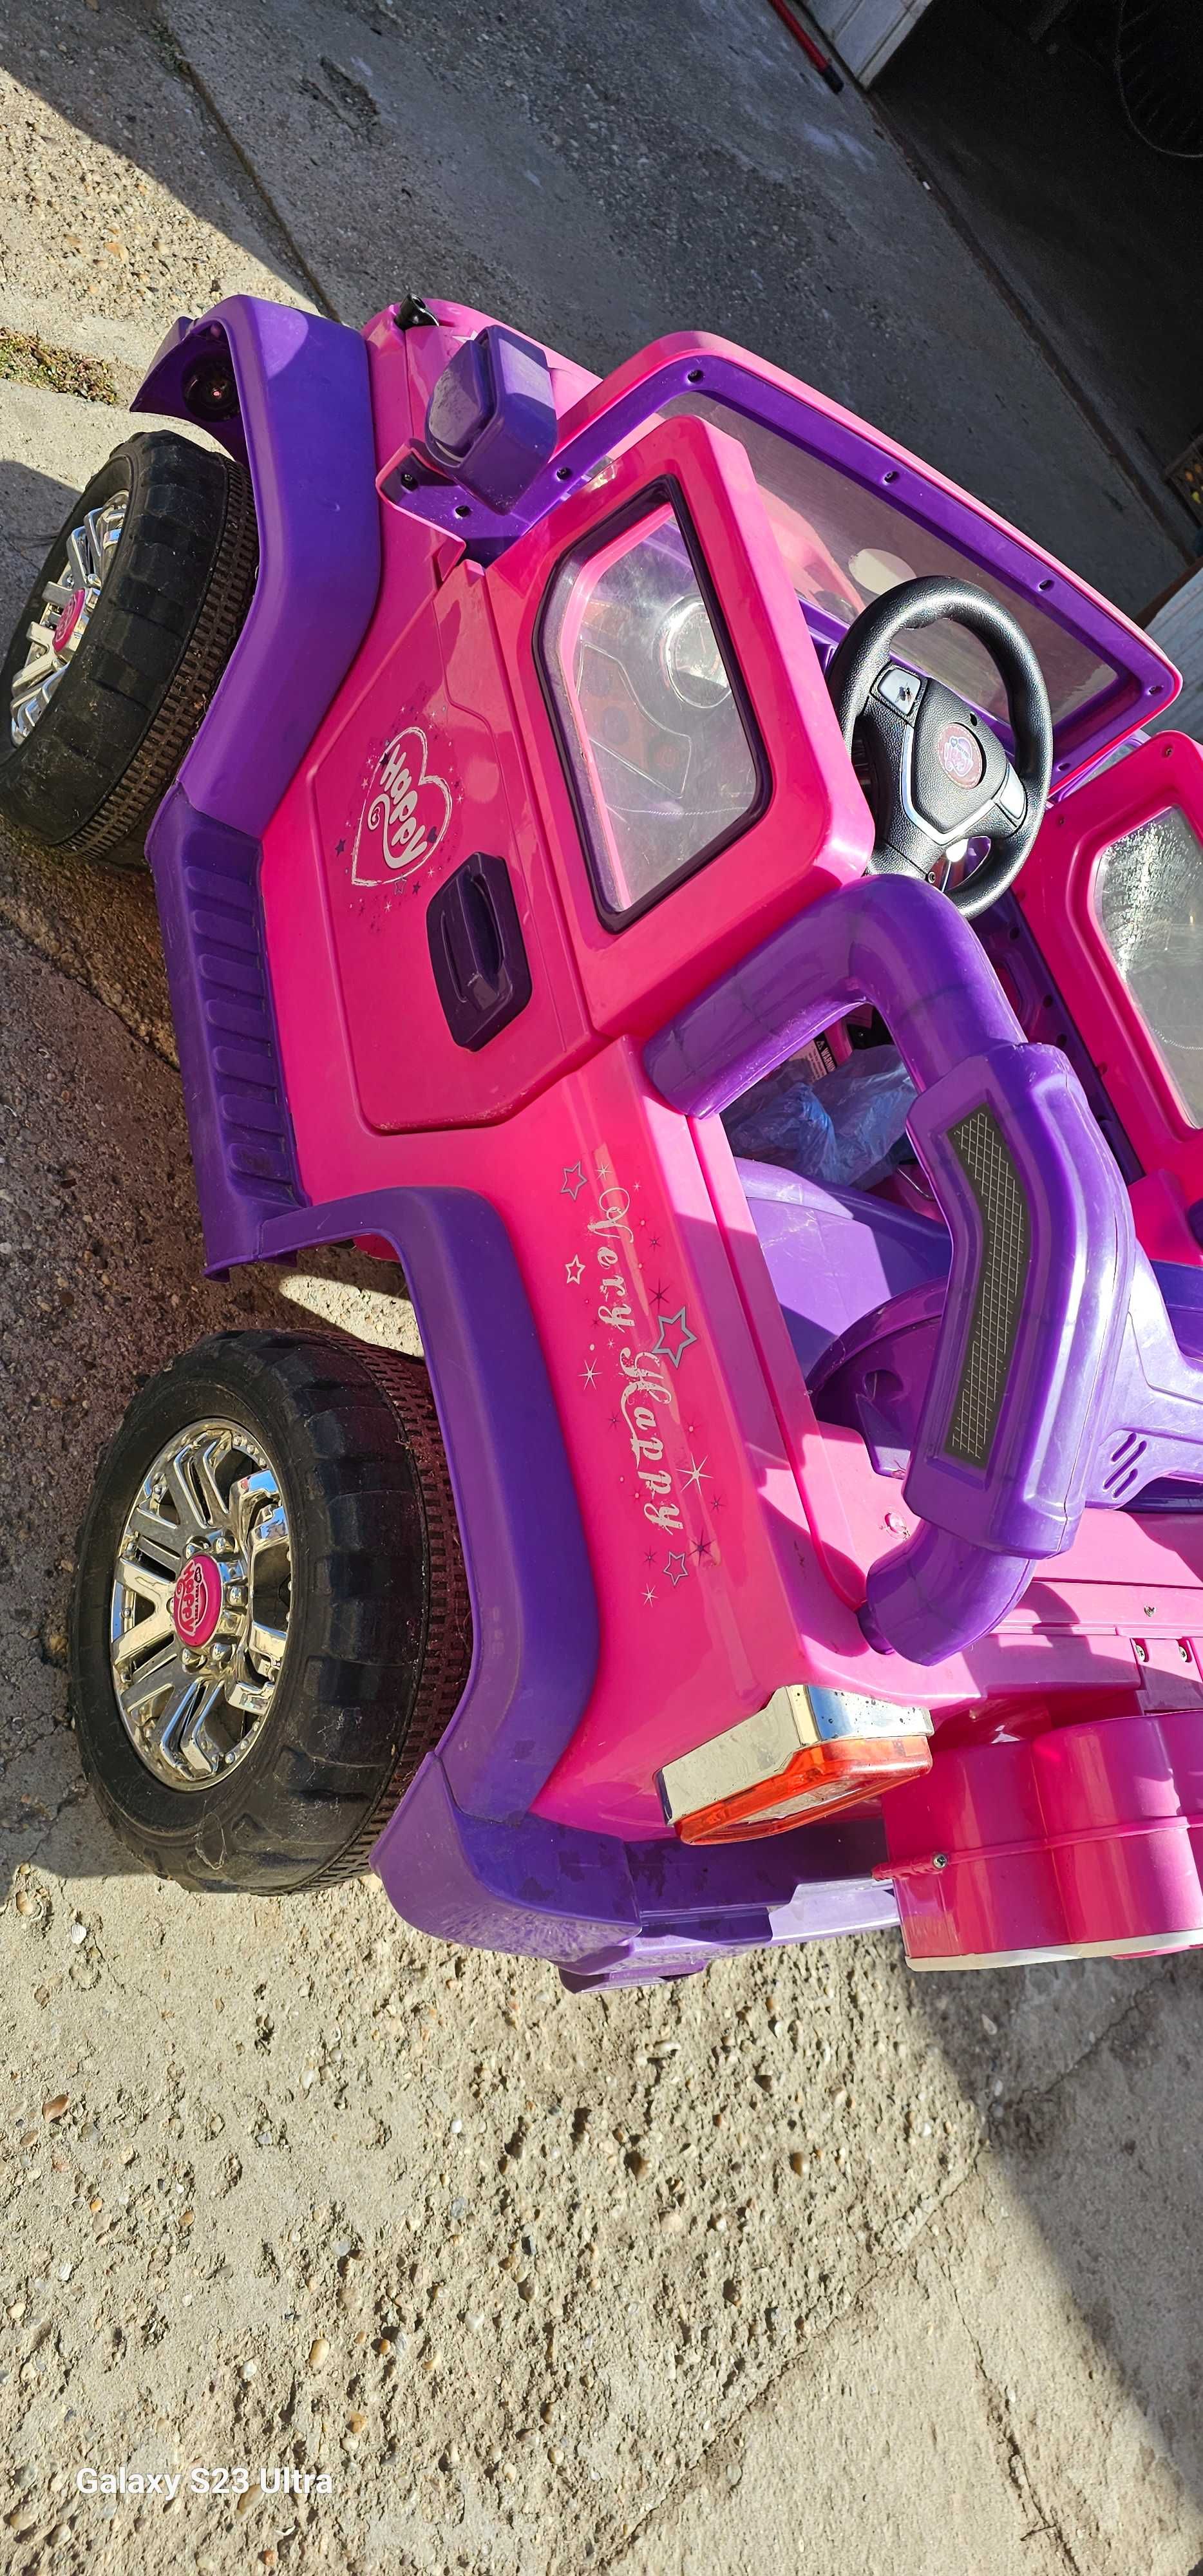 Masinuta electrica Jeep ReBack roz